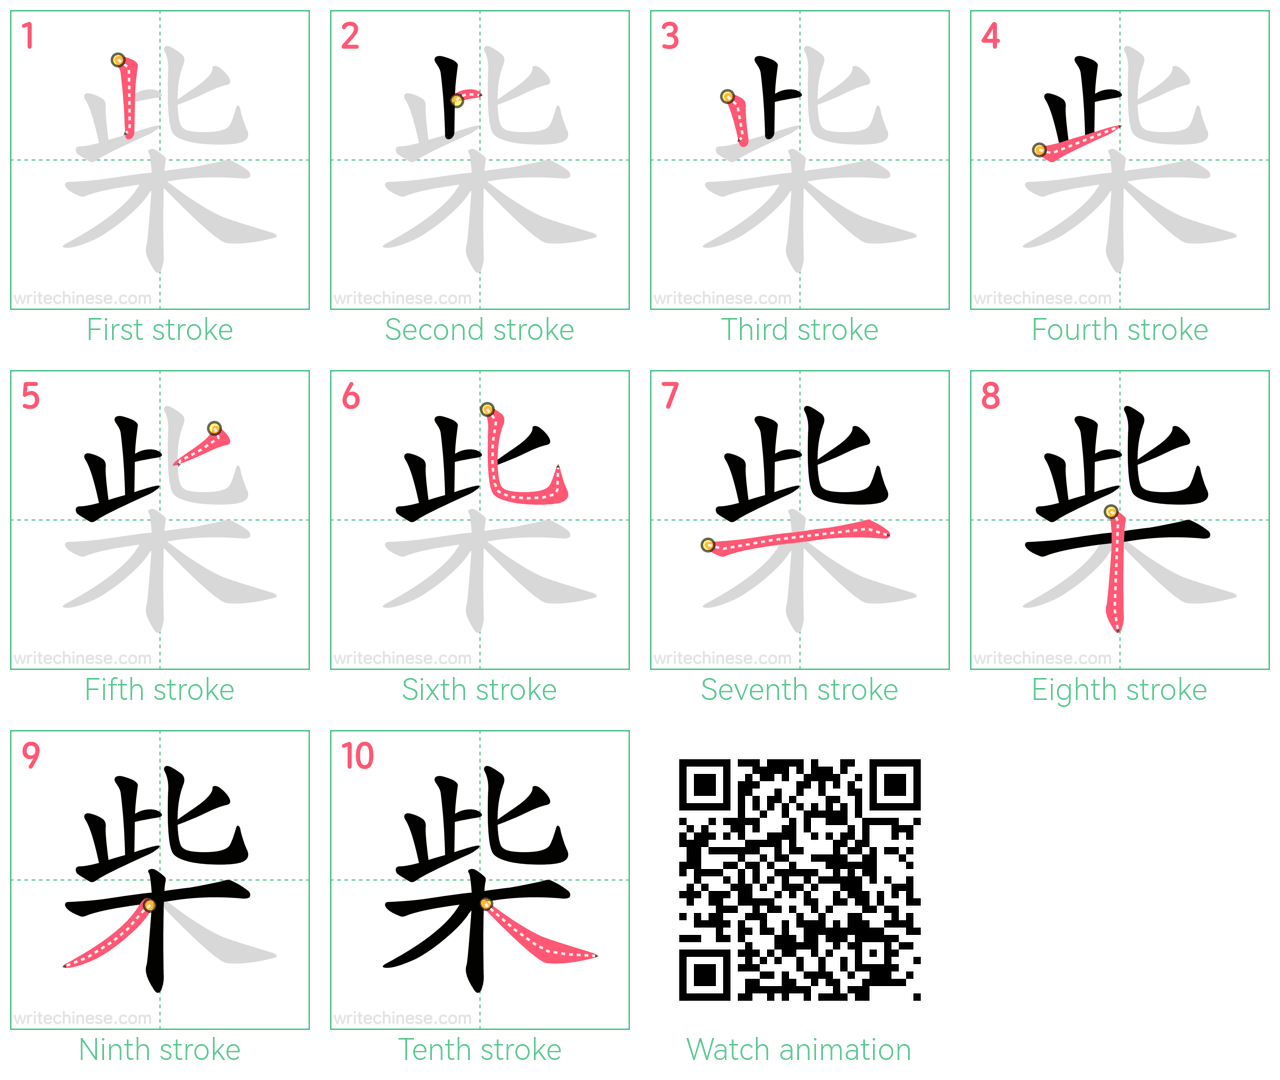 柴 step-by-step stroke order diagrams